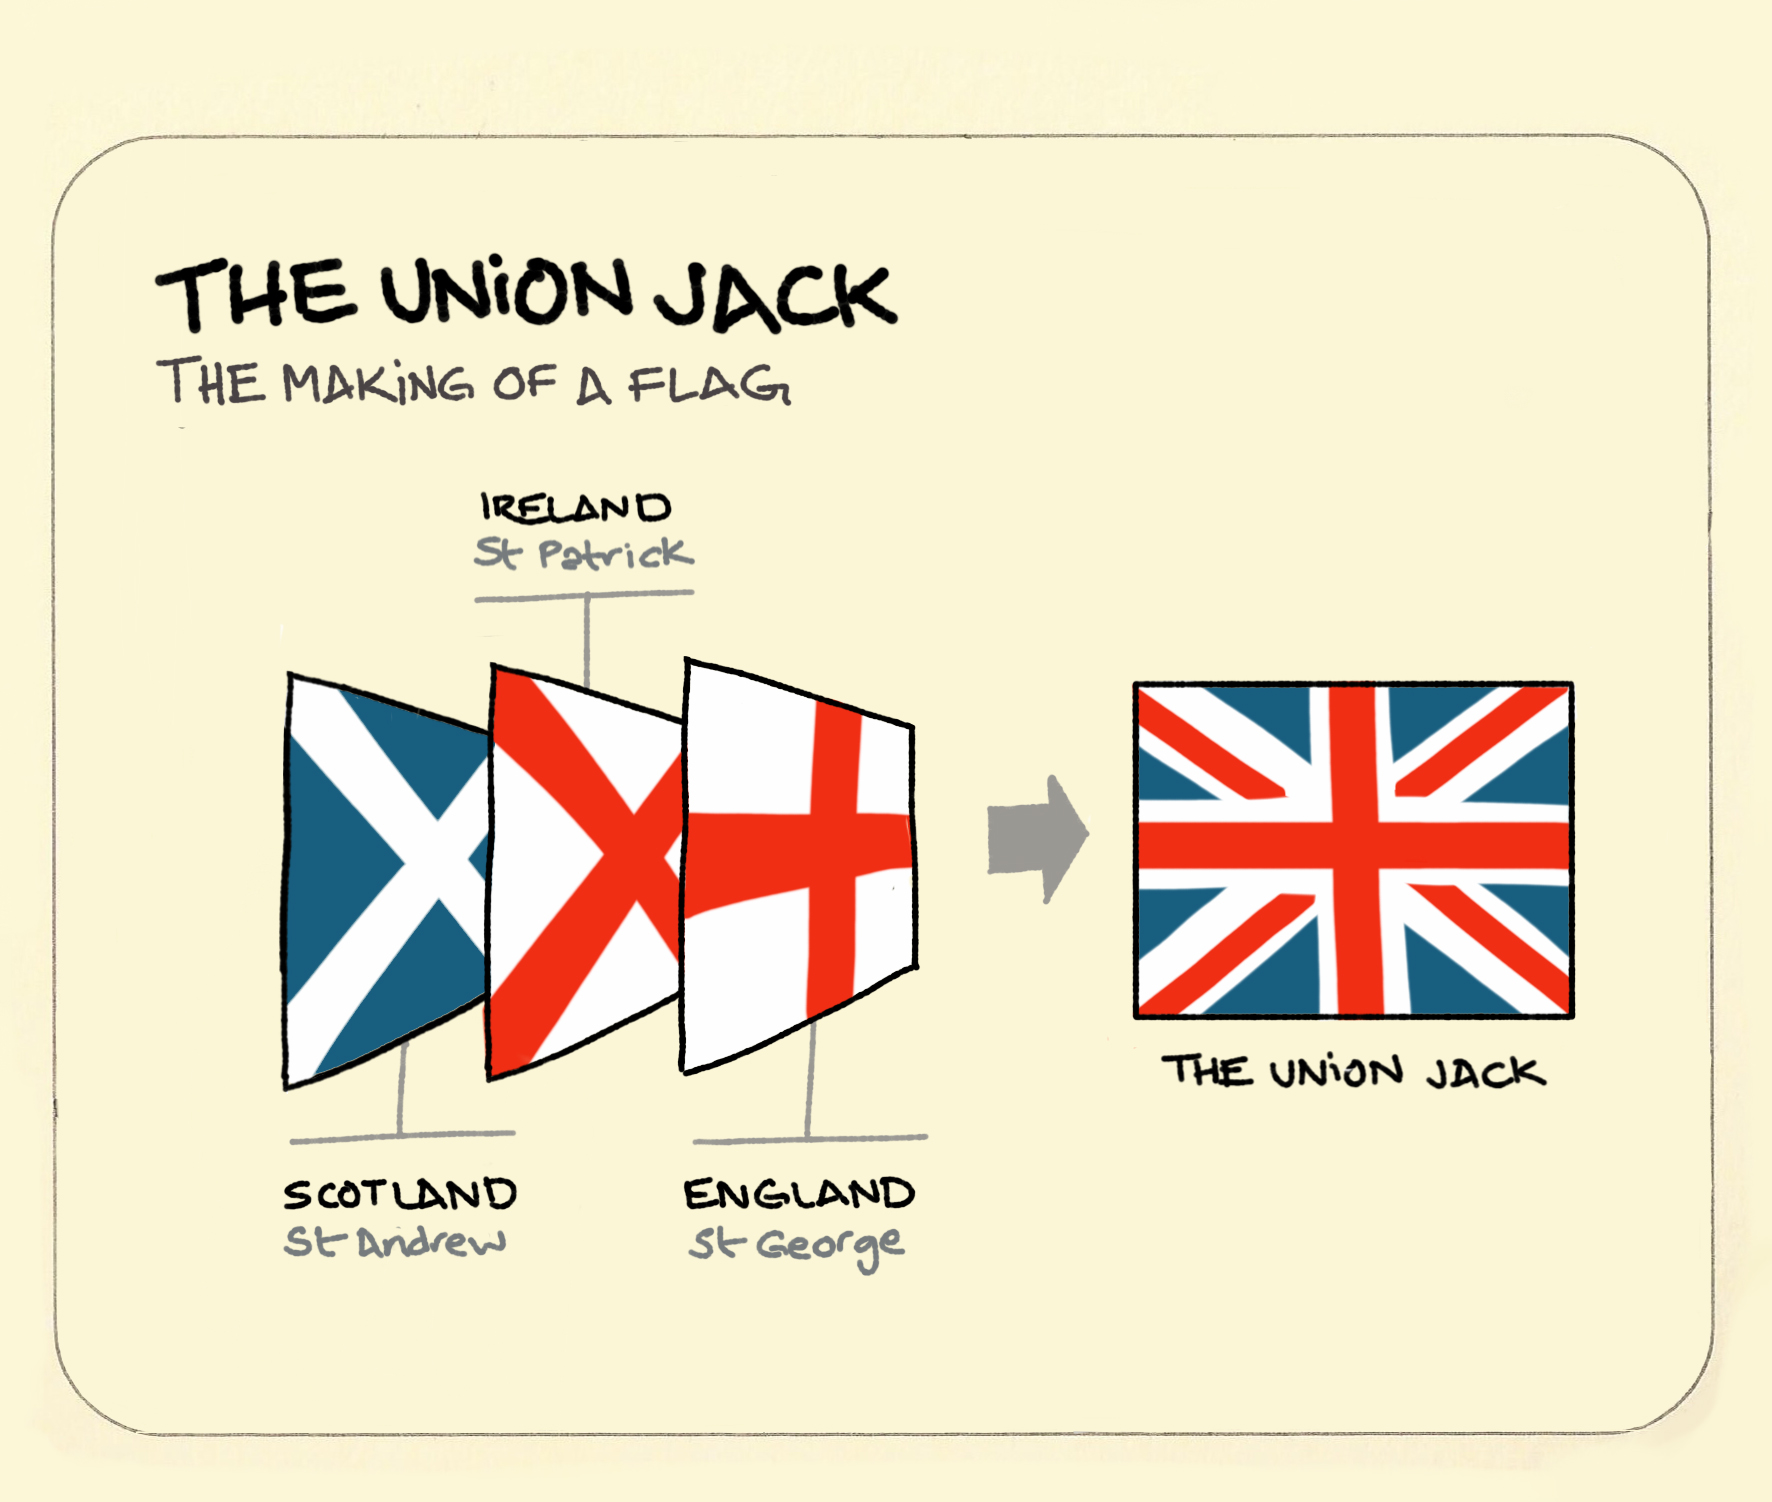 Yhdistyneen kuningaskunnan lippu (Union Jack) lippu ja mistä se koostuu: Skotlannin, Irlannin ja Englannin lipusta.